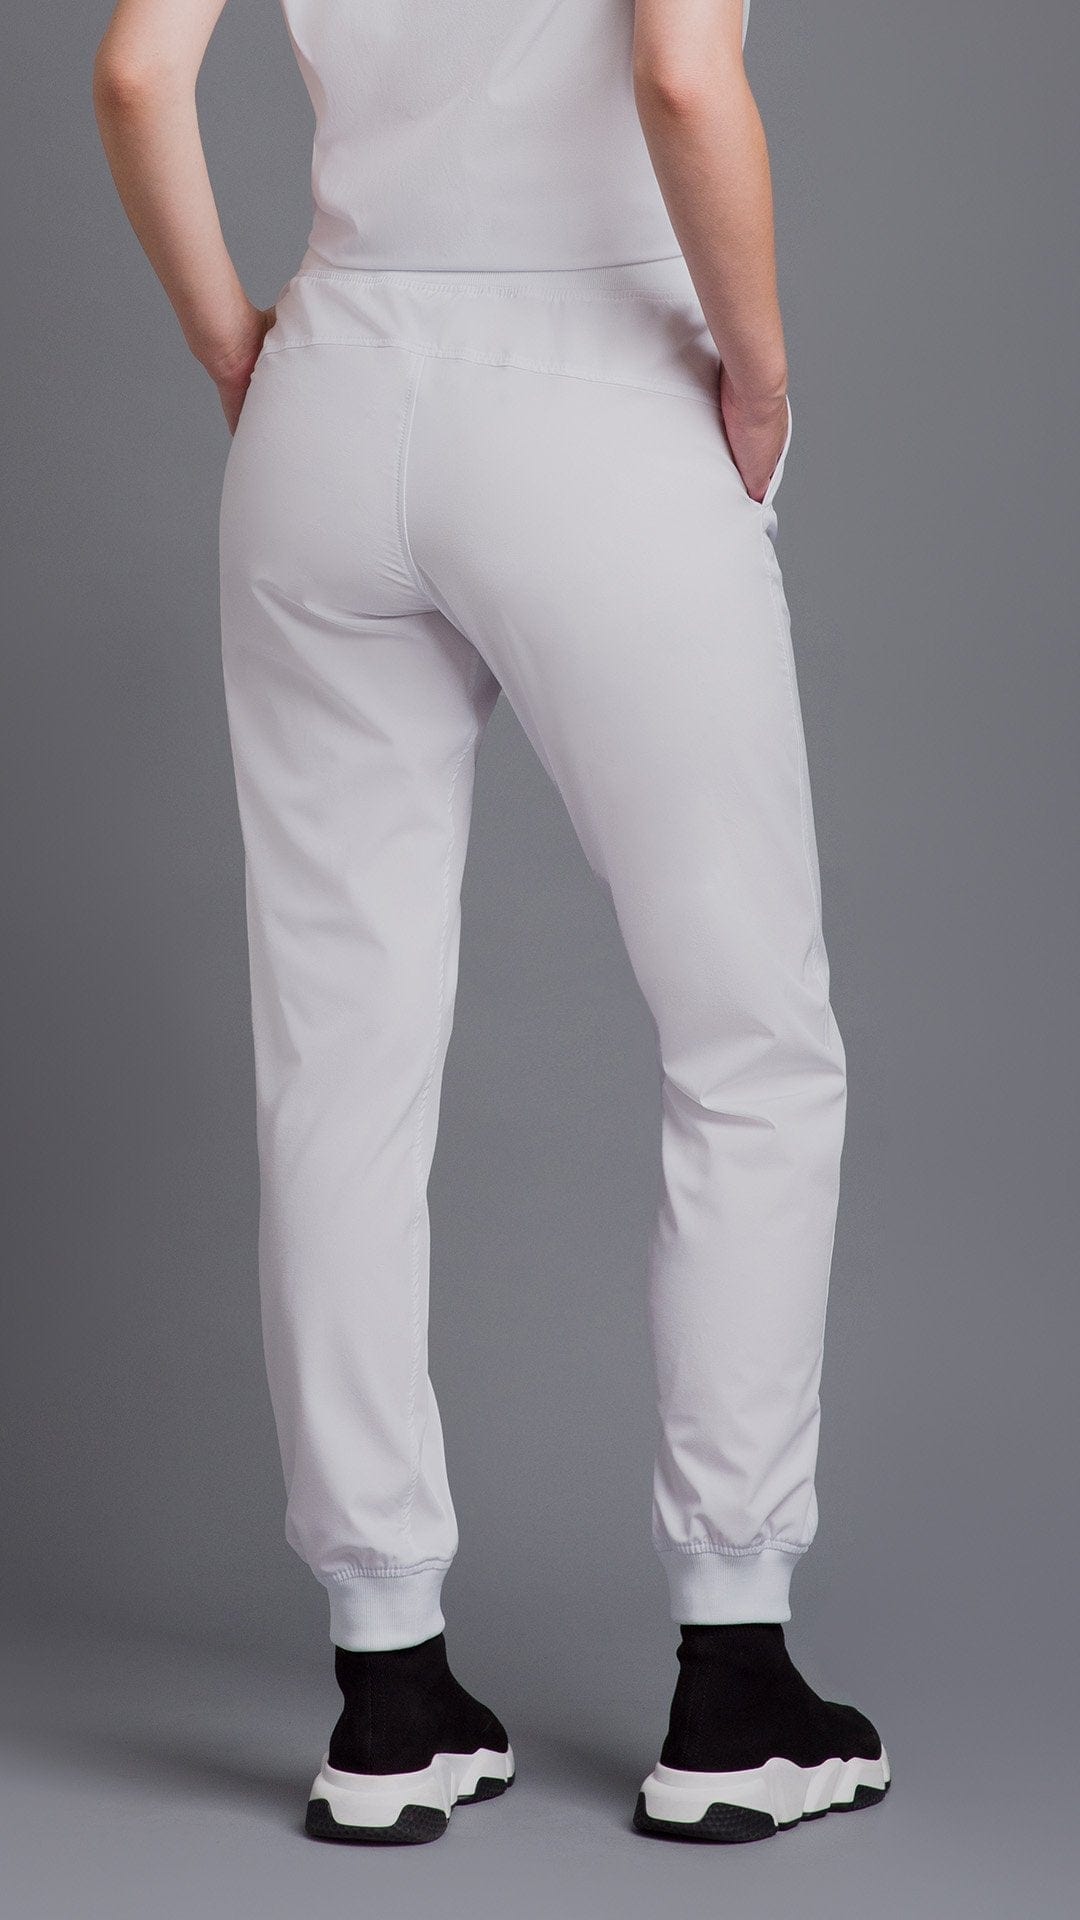 Kanaus® Pants Casual Deep White | Dama - Kanaus